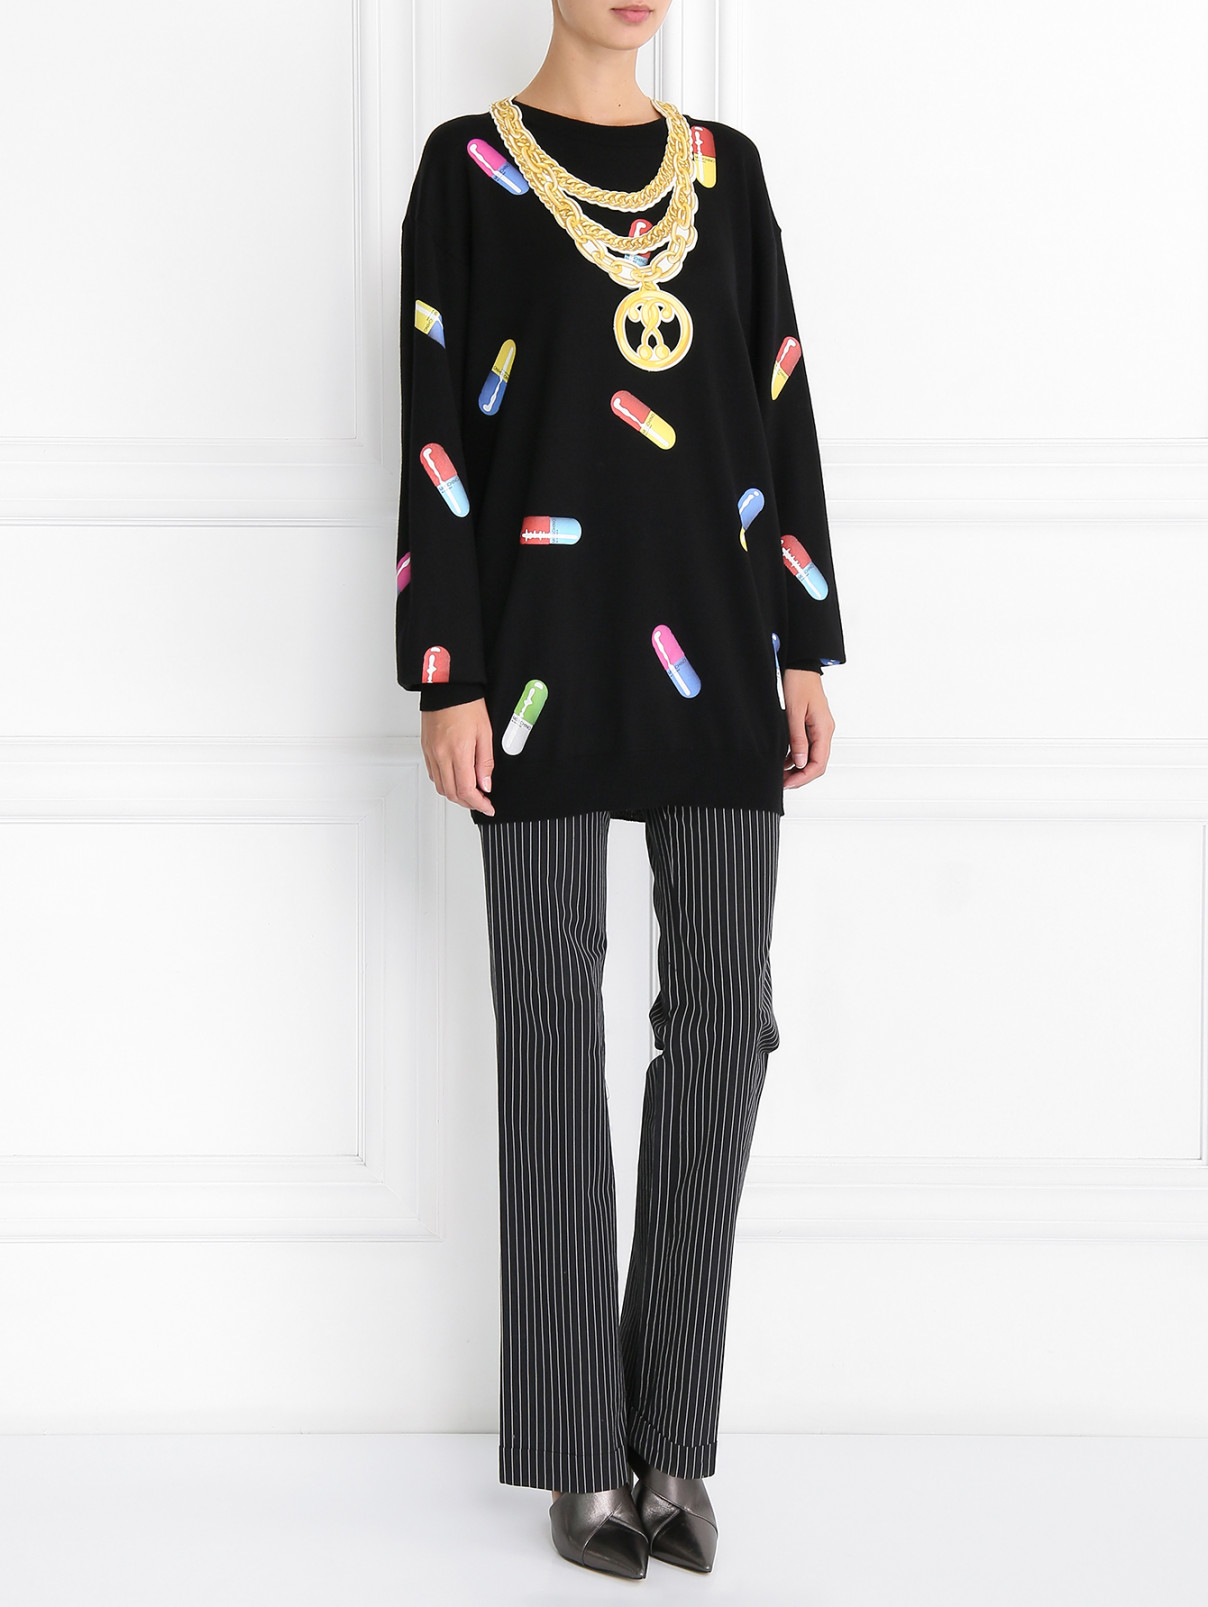 Колье из текстиля с принтом Moschino Couture  –  Модель Общий вид  – Цвет:  Желтый